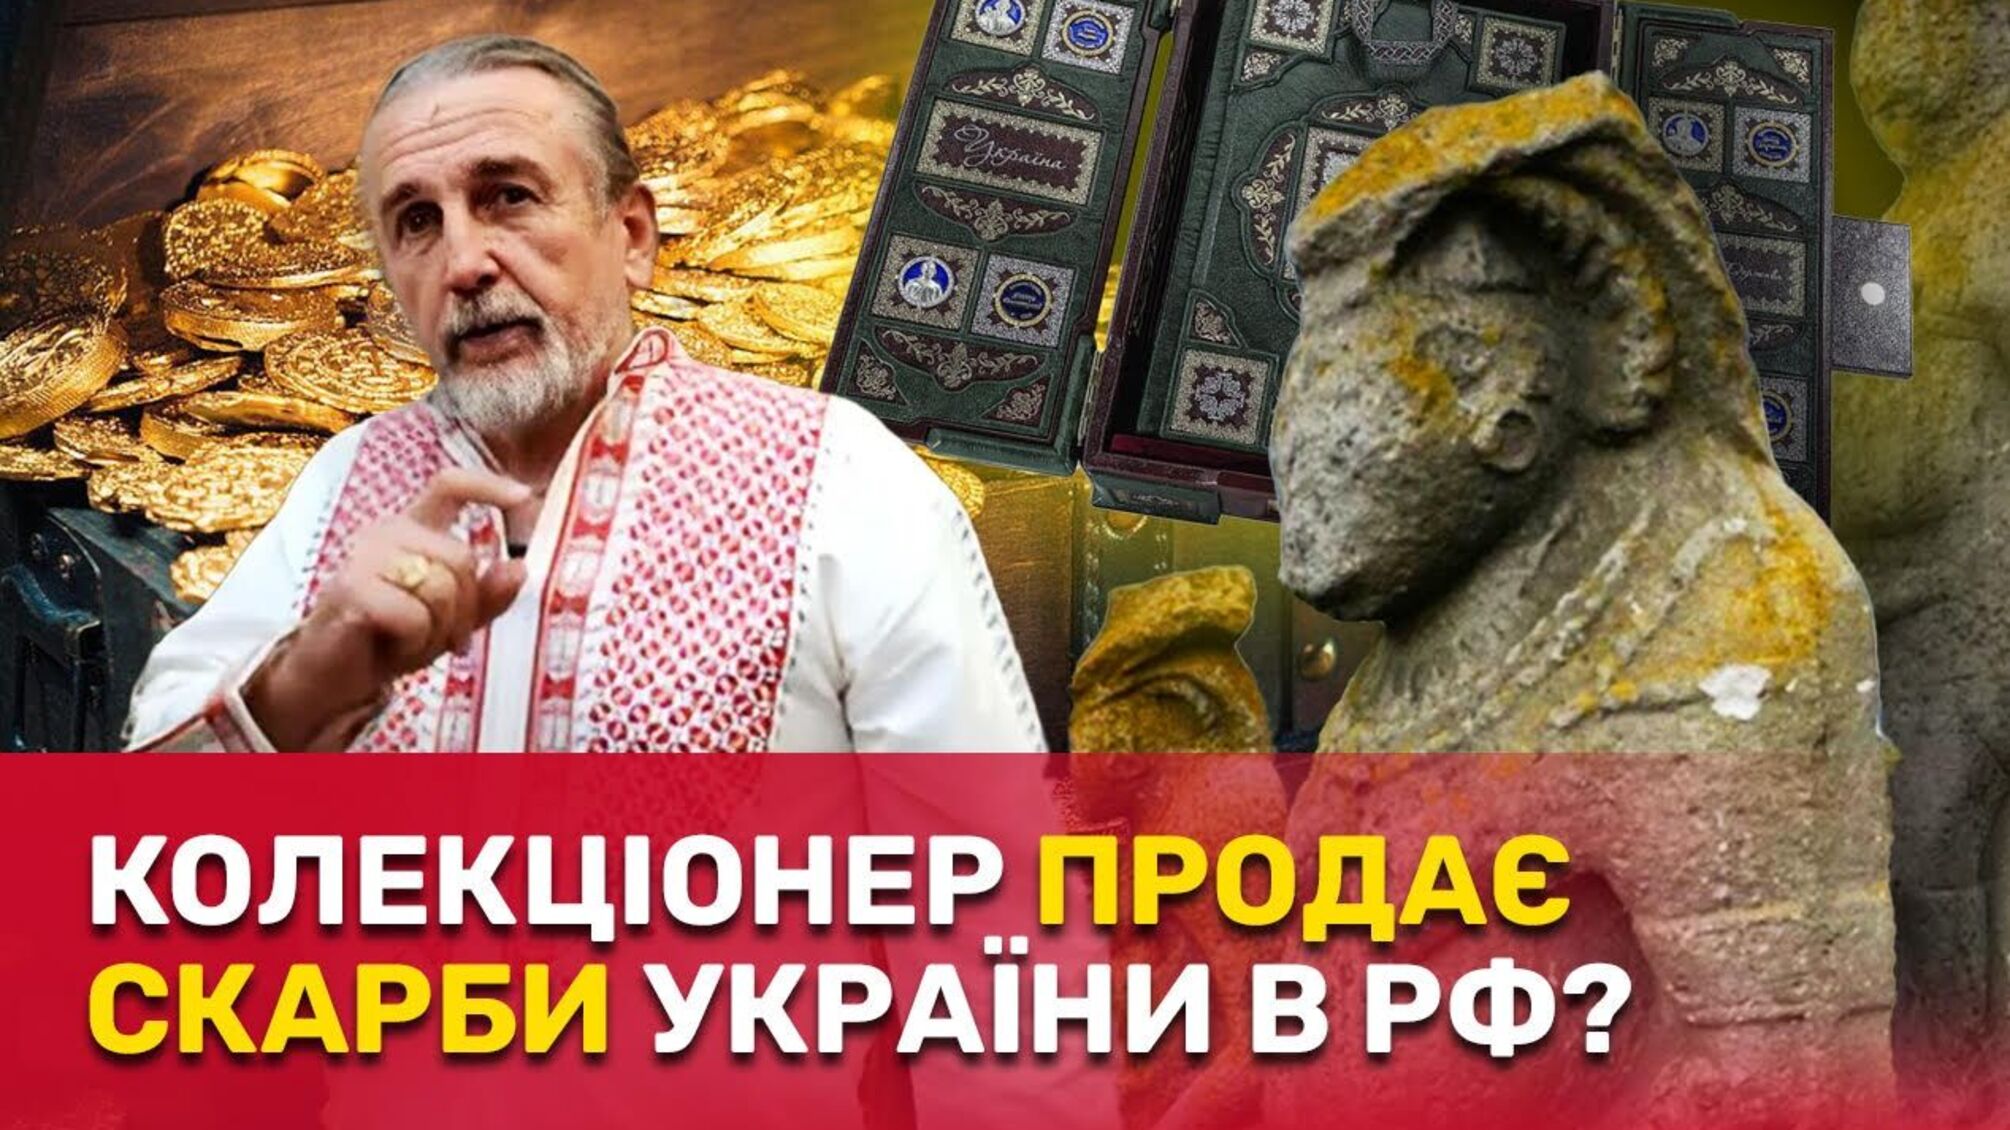 Продает украинские сокровища в рф? Как частный коллекционер Недяк завладел экспонатами на миллионы долларов – расследование